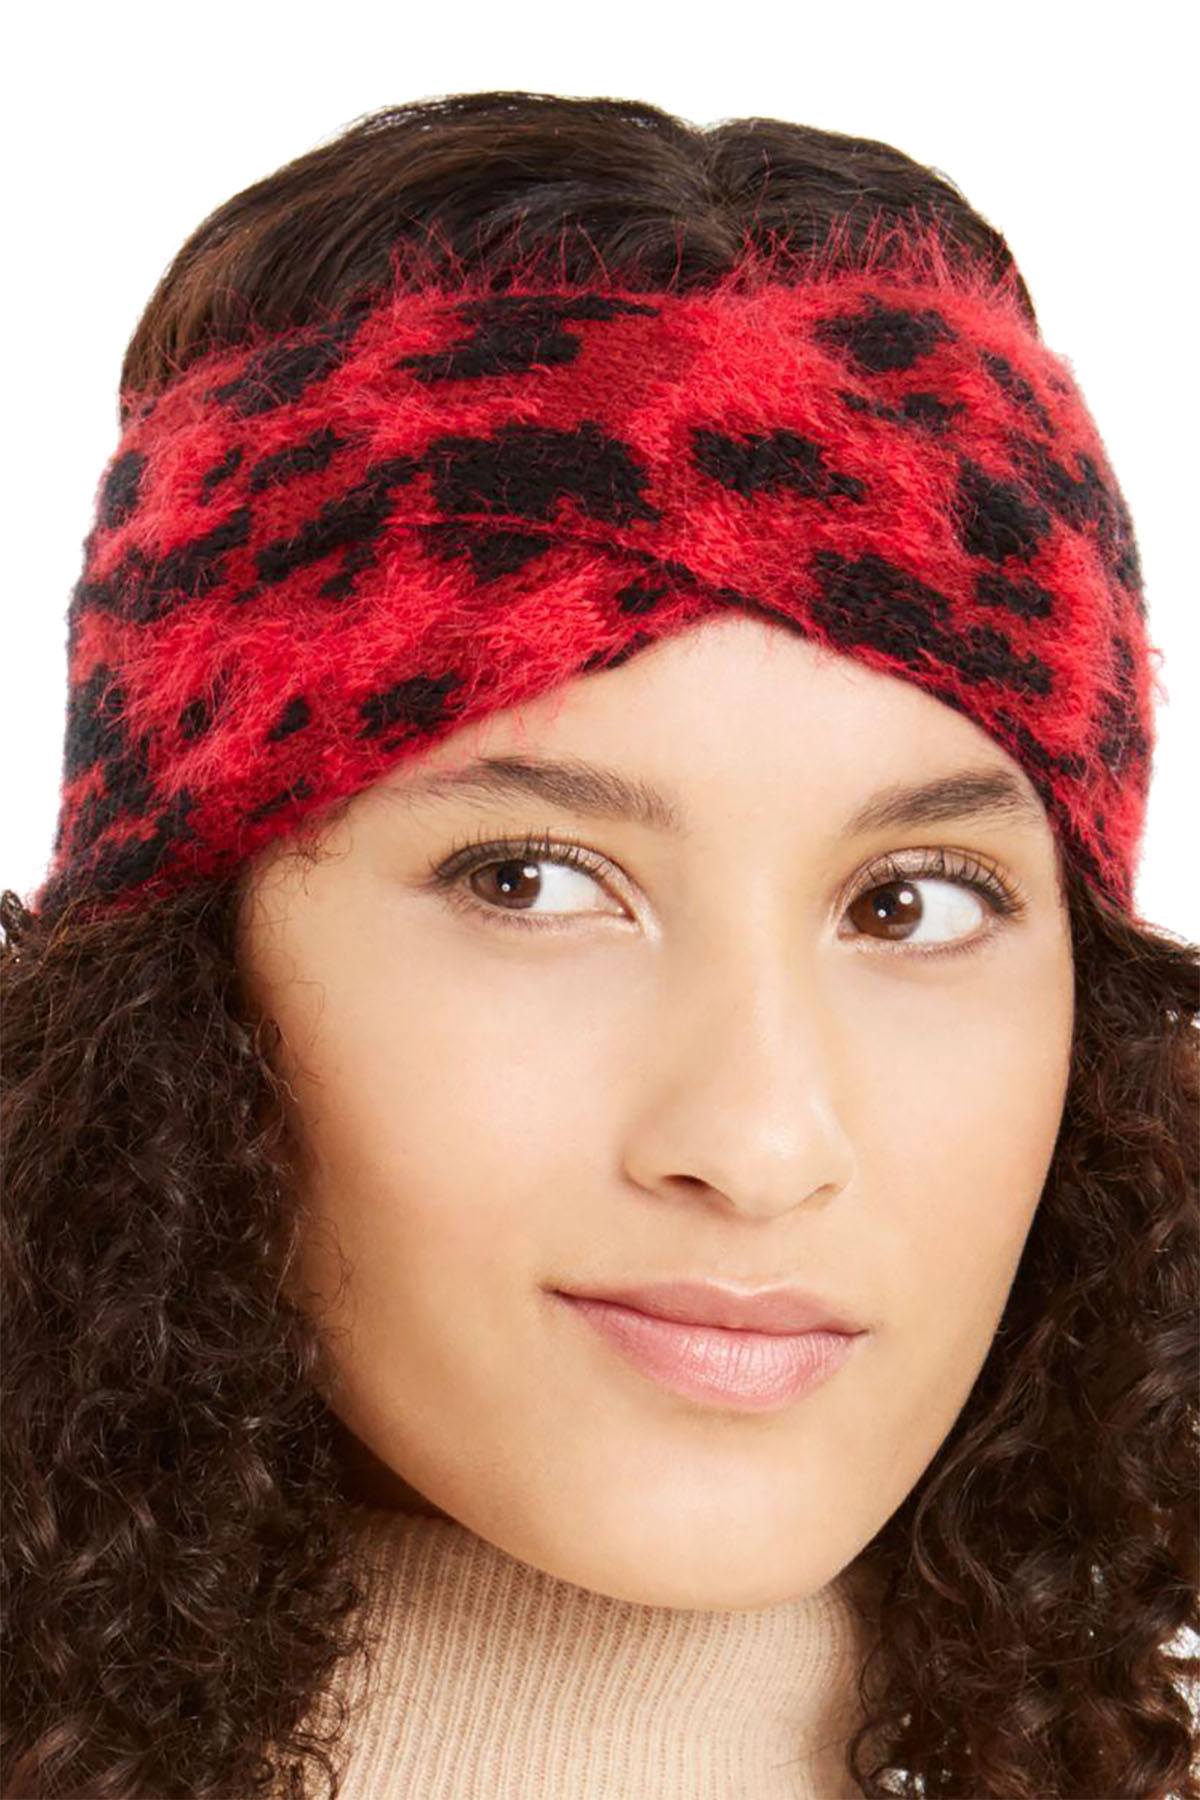 DKNY Red Fuzzy Animal Print Knit Twist Headband